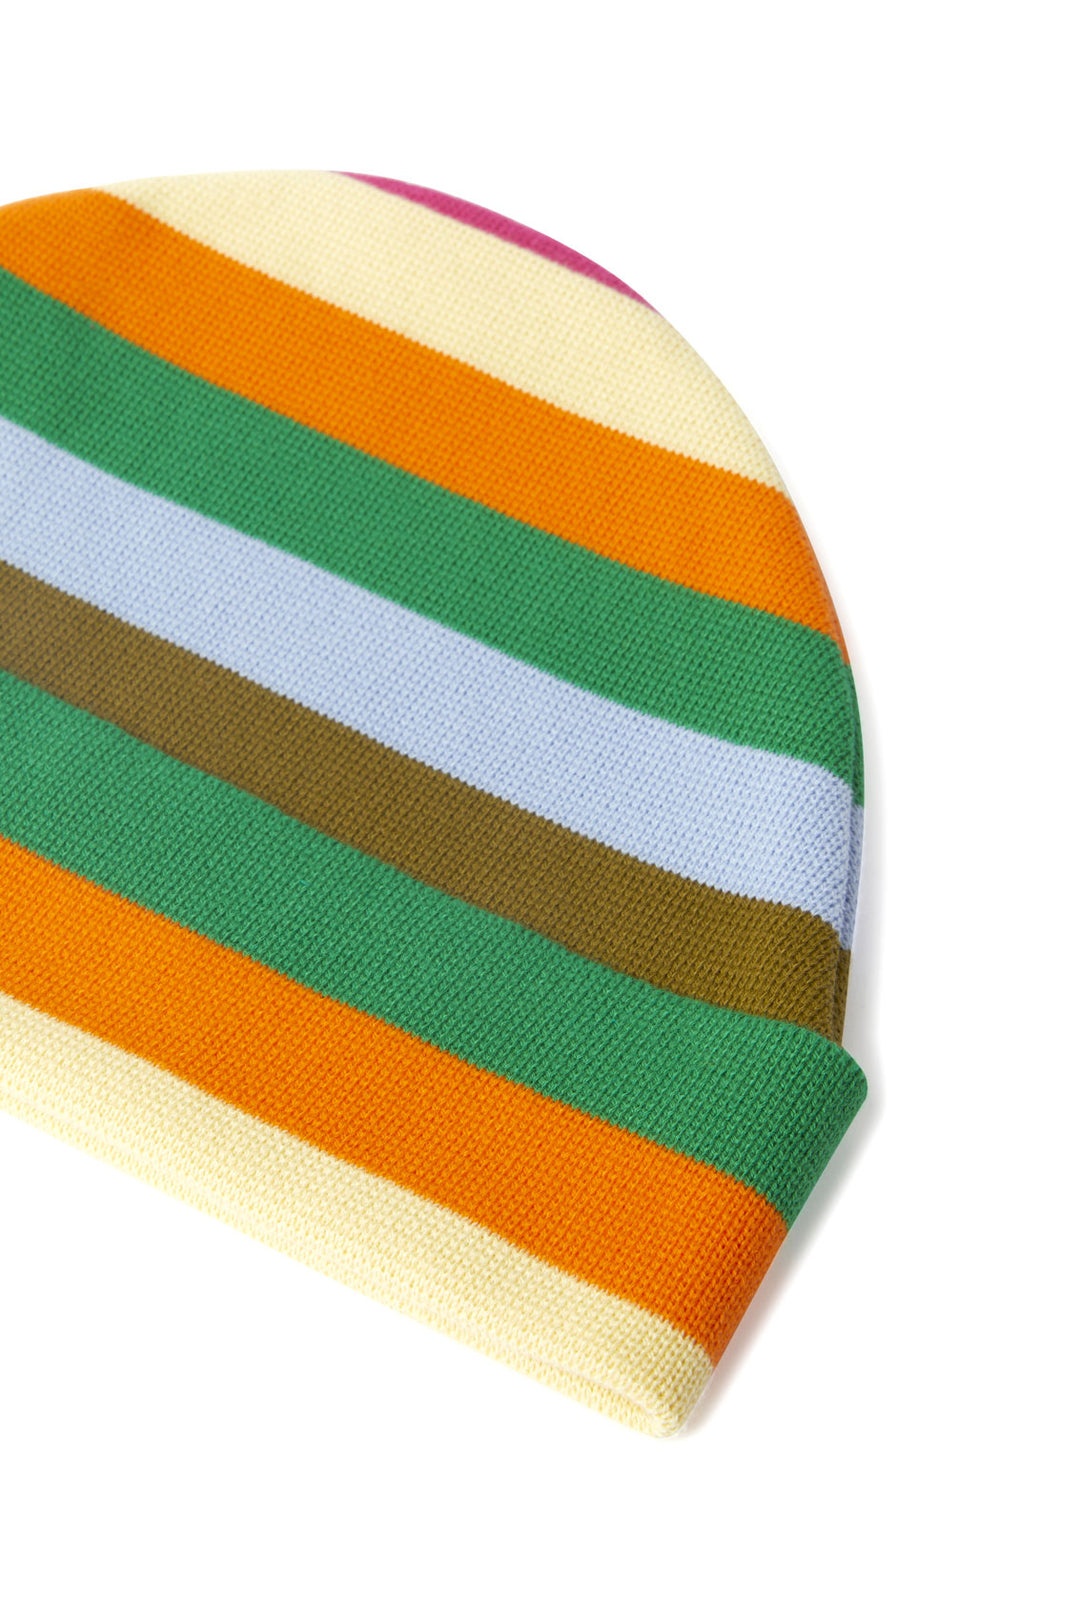 KNIT HAT / multicolor stripes - 2